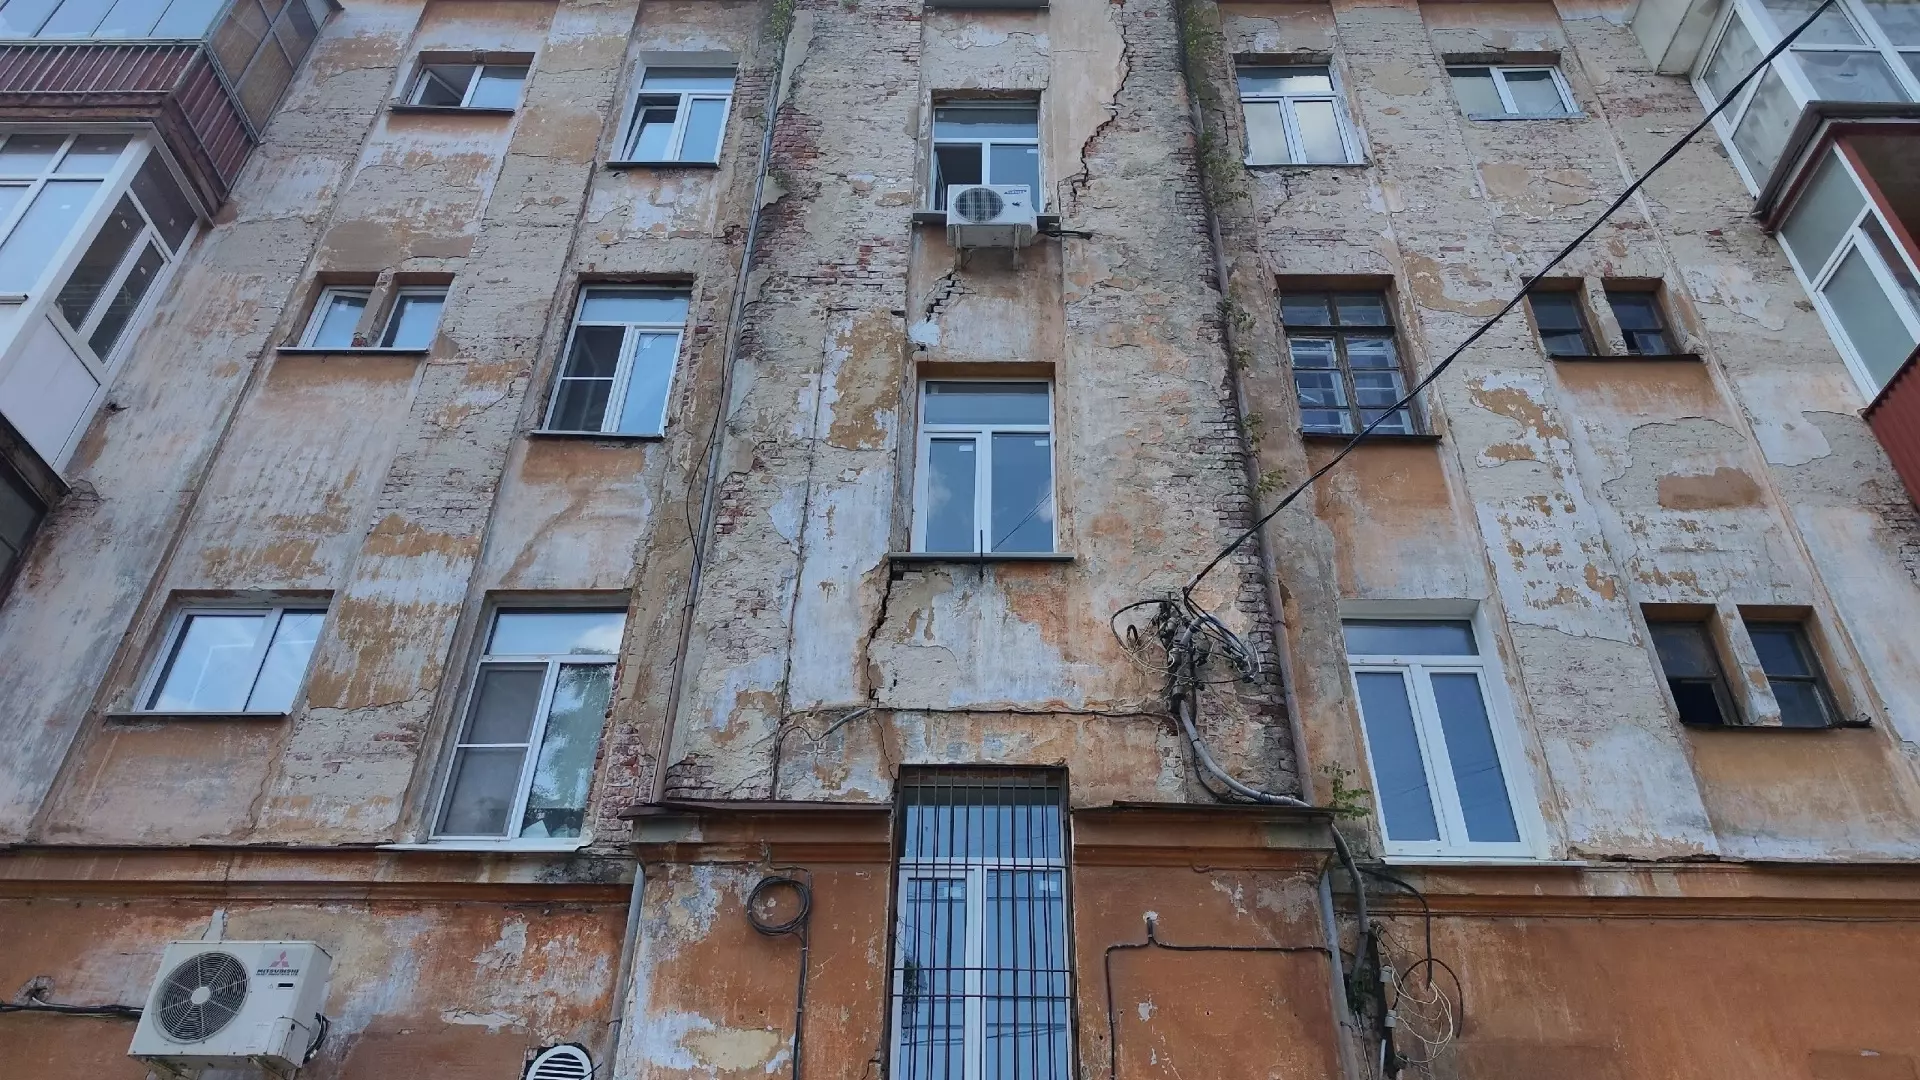 255 аварийных домов расселят в Нижнем Новгороде за пять лет